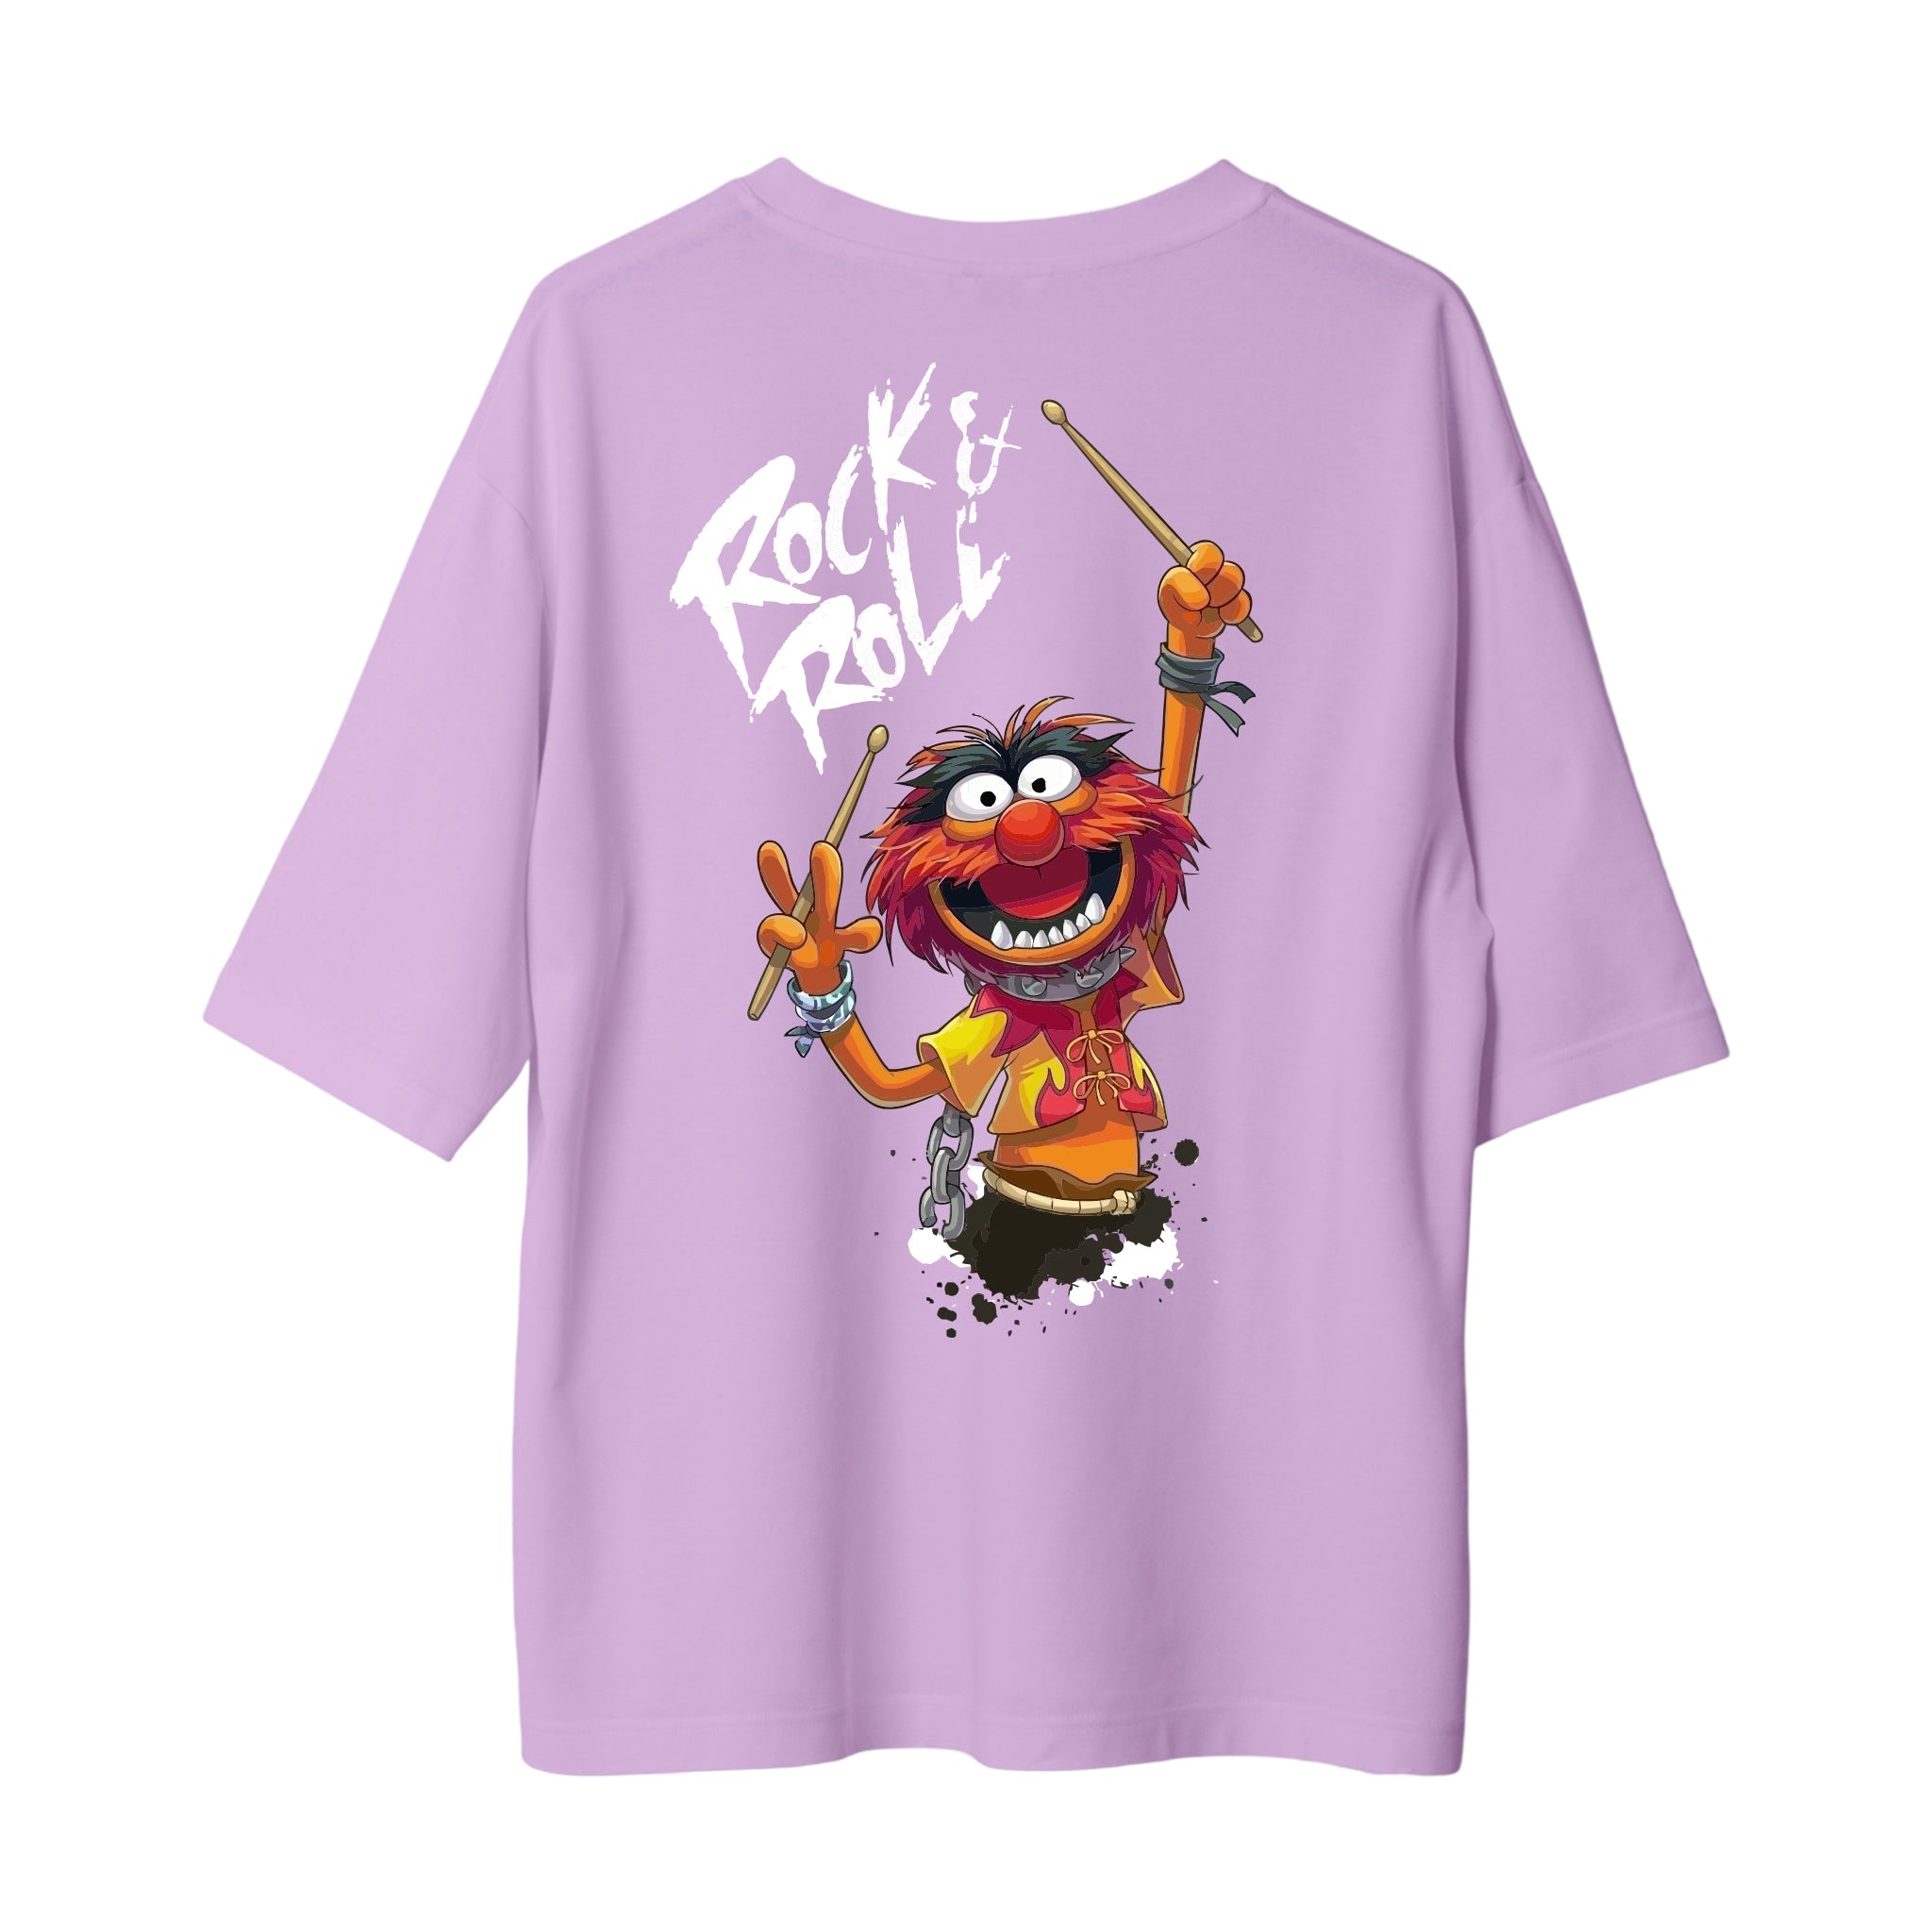 Muppets Rock - Oversize T-Shirt